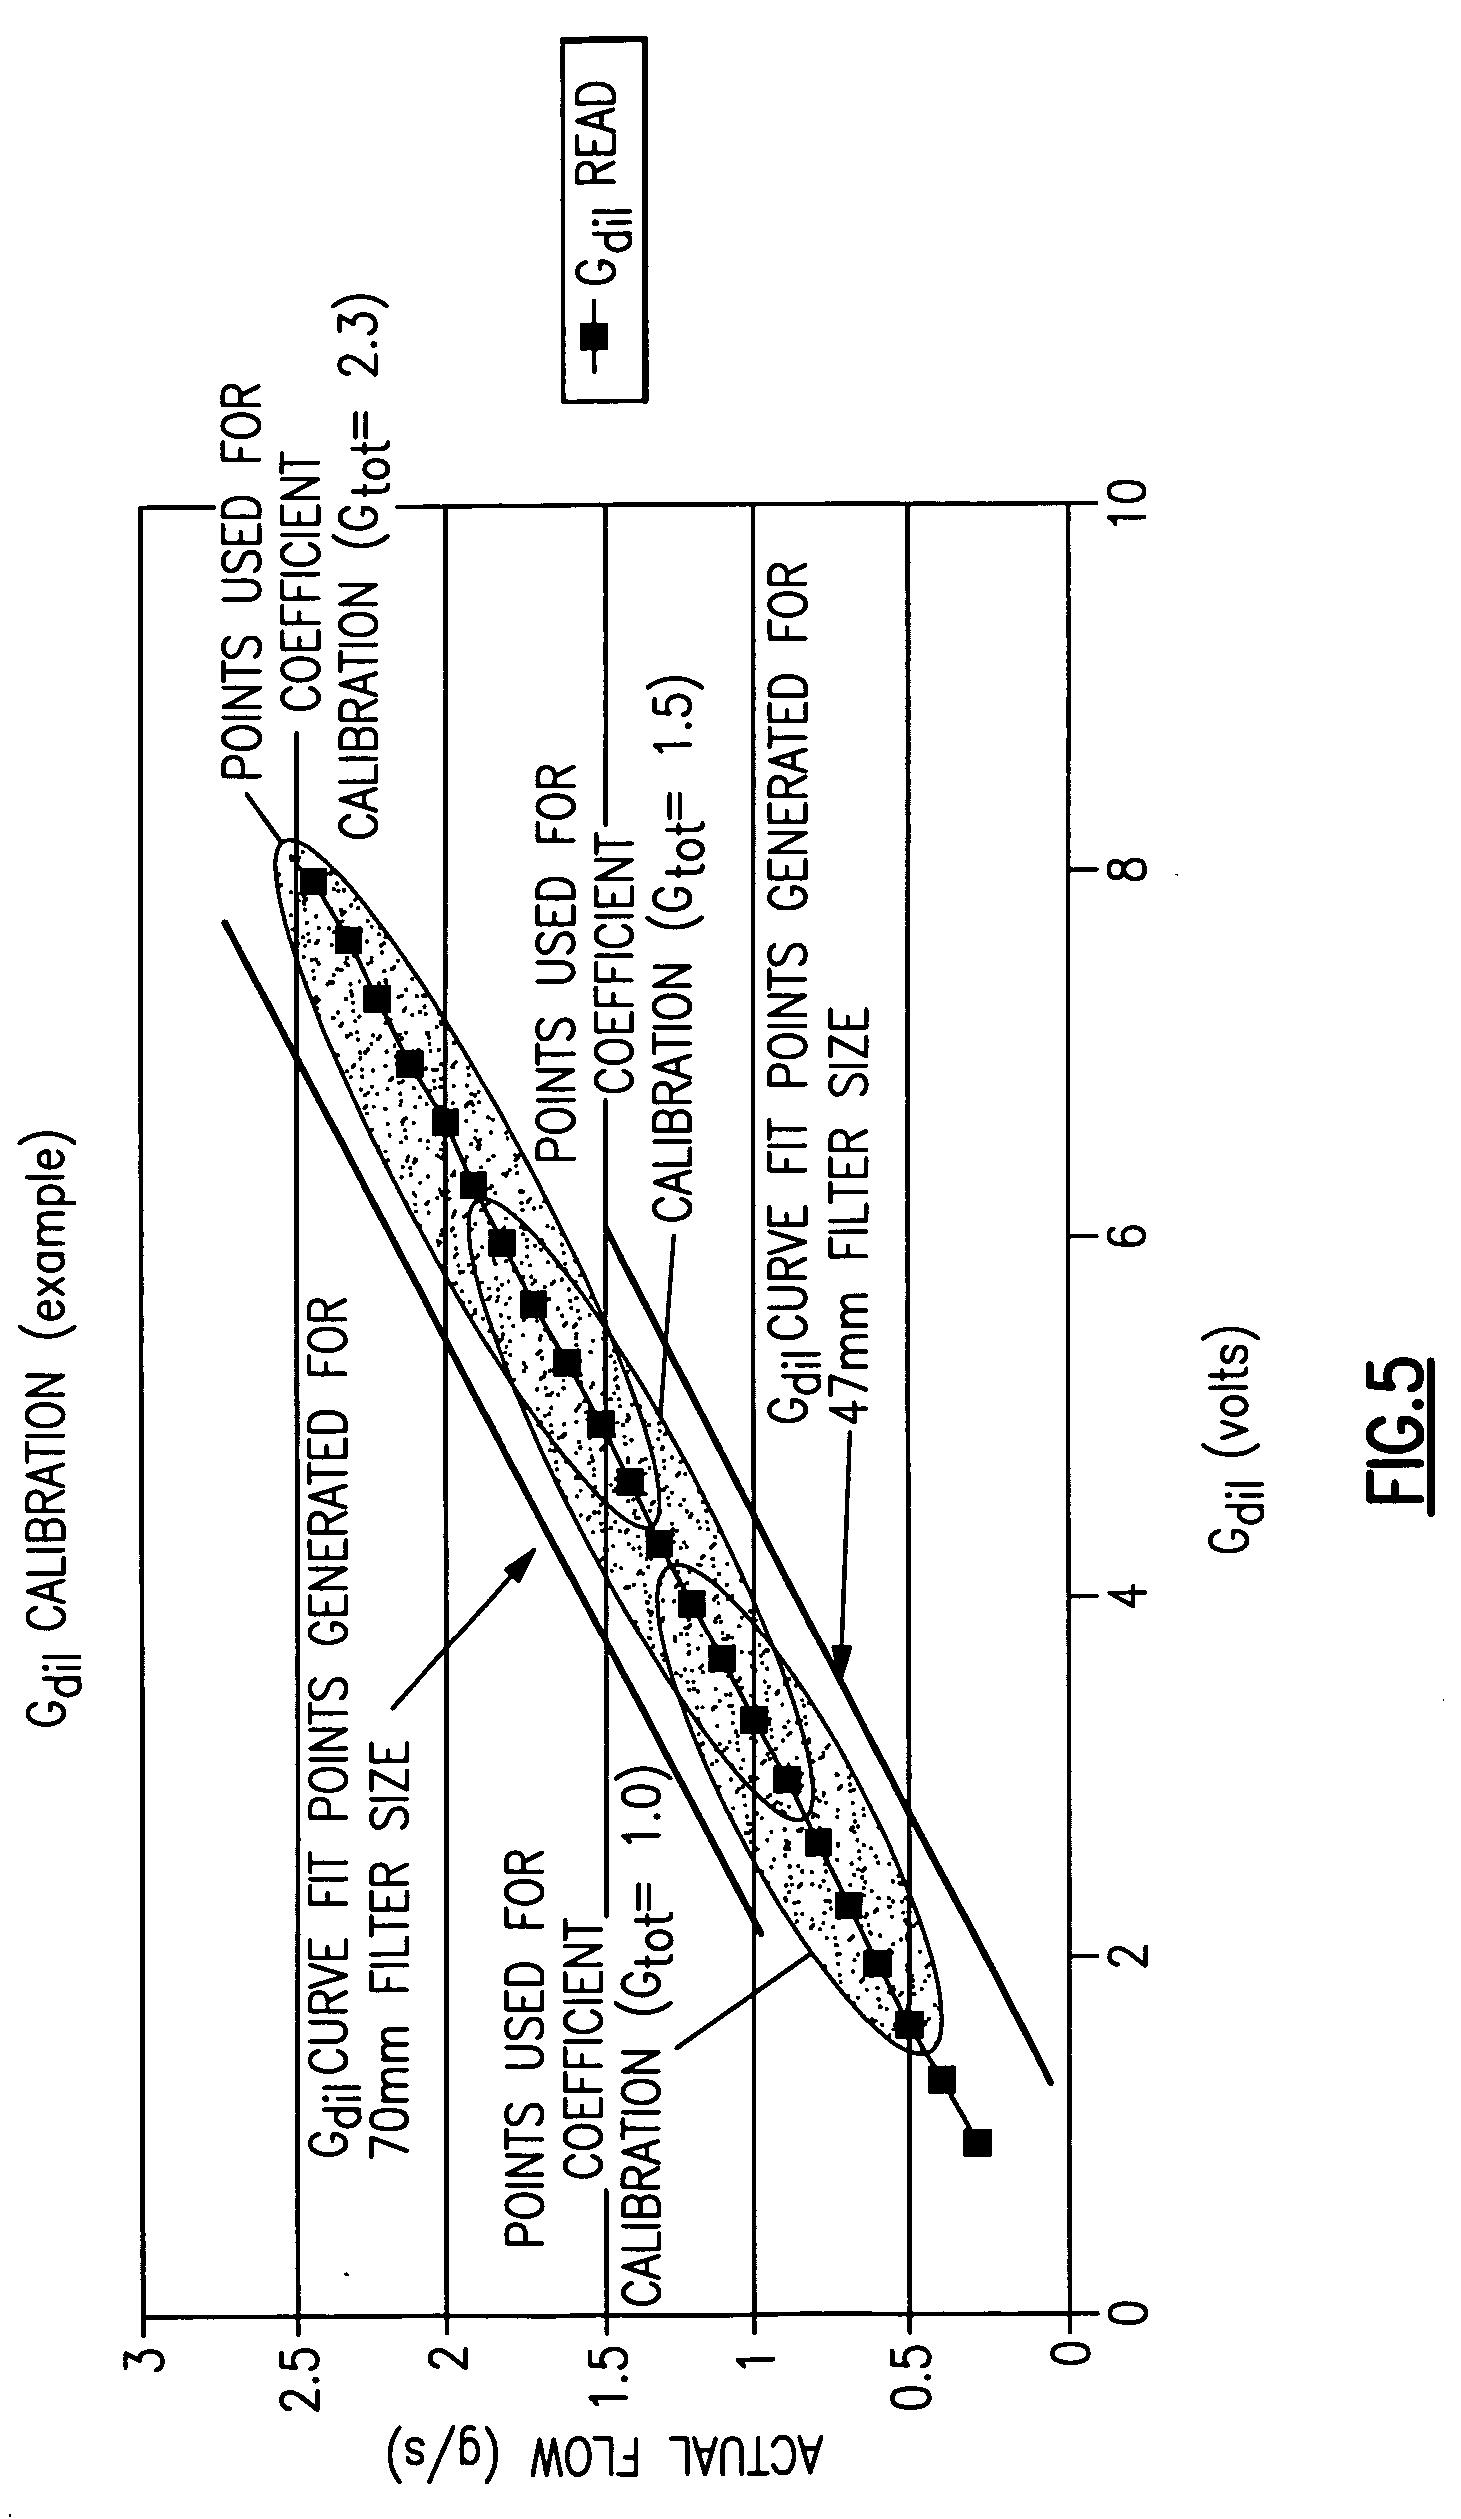 Particulate sampler system flow calibration